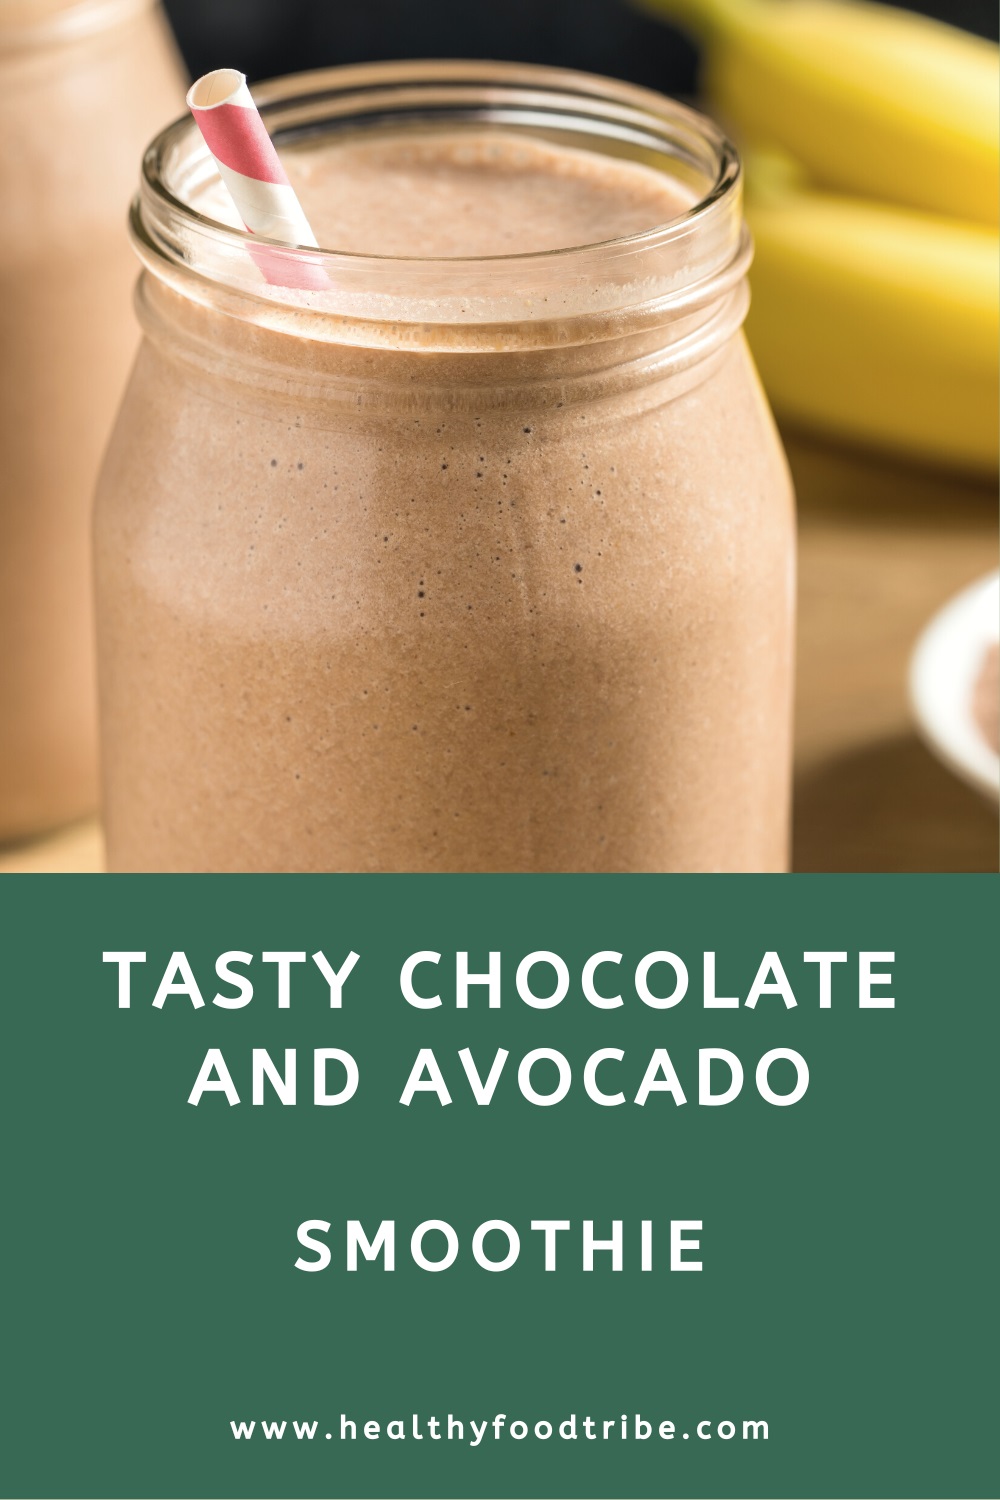 Chocolate and avocado smoothie recipe